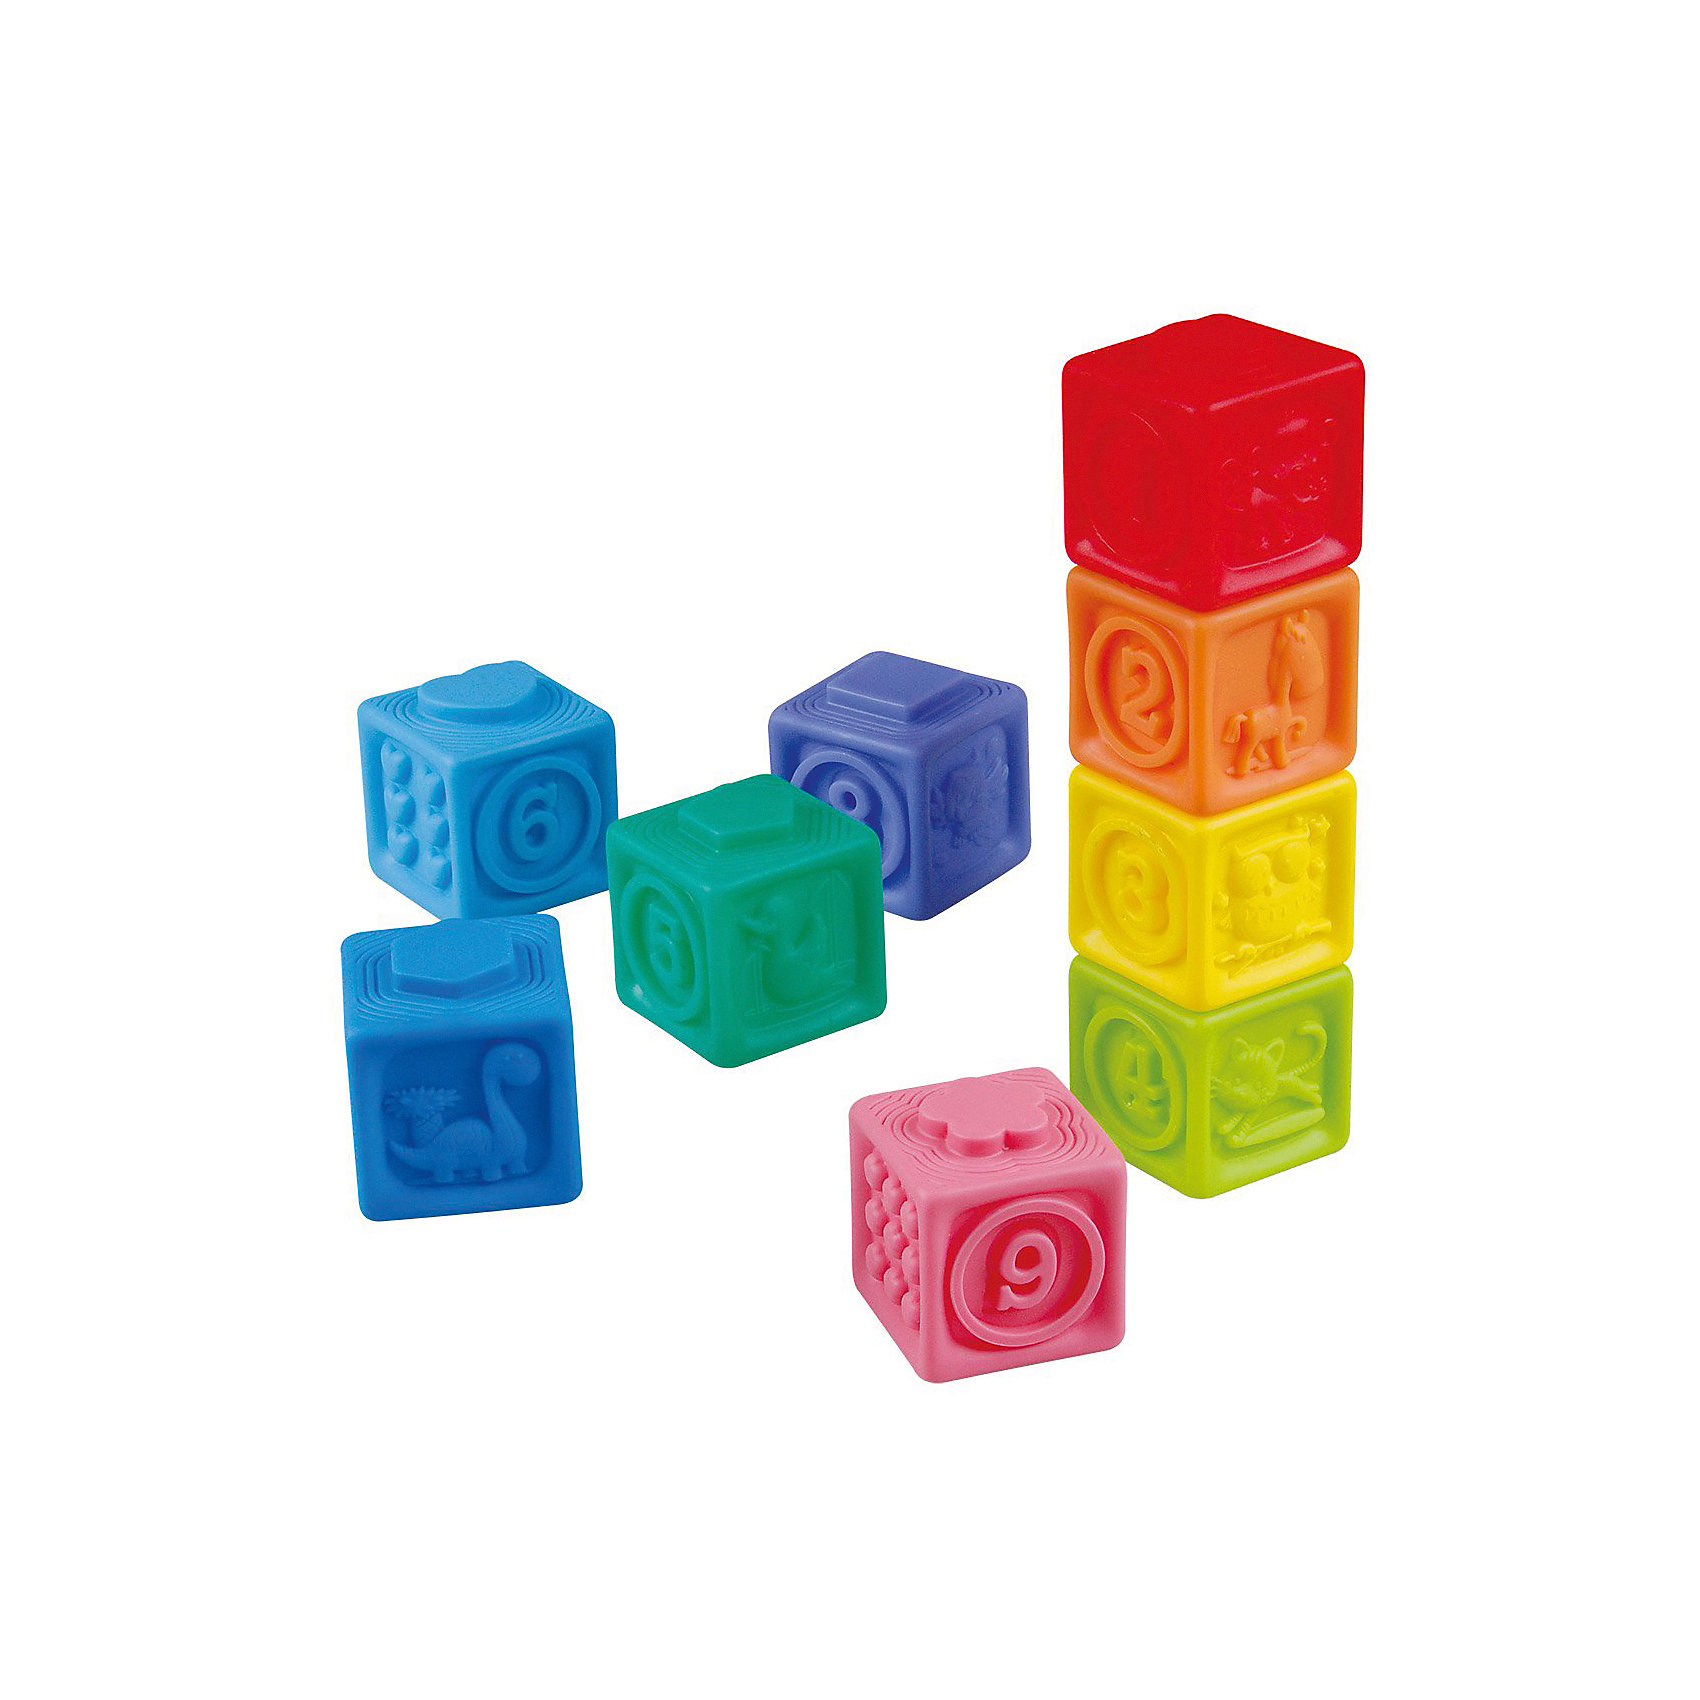 Набор кубиков. Игровой набор кубики. Игровой набор кубиков мягкий. PLAYGO игрушки кубики. Купить наборы кубиков